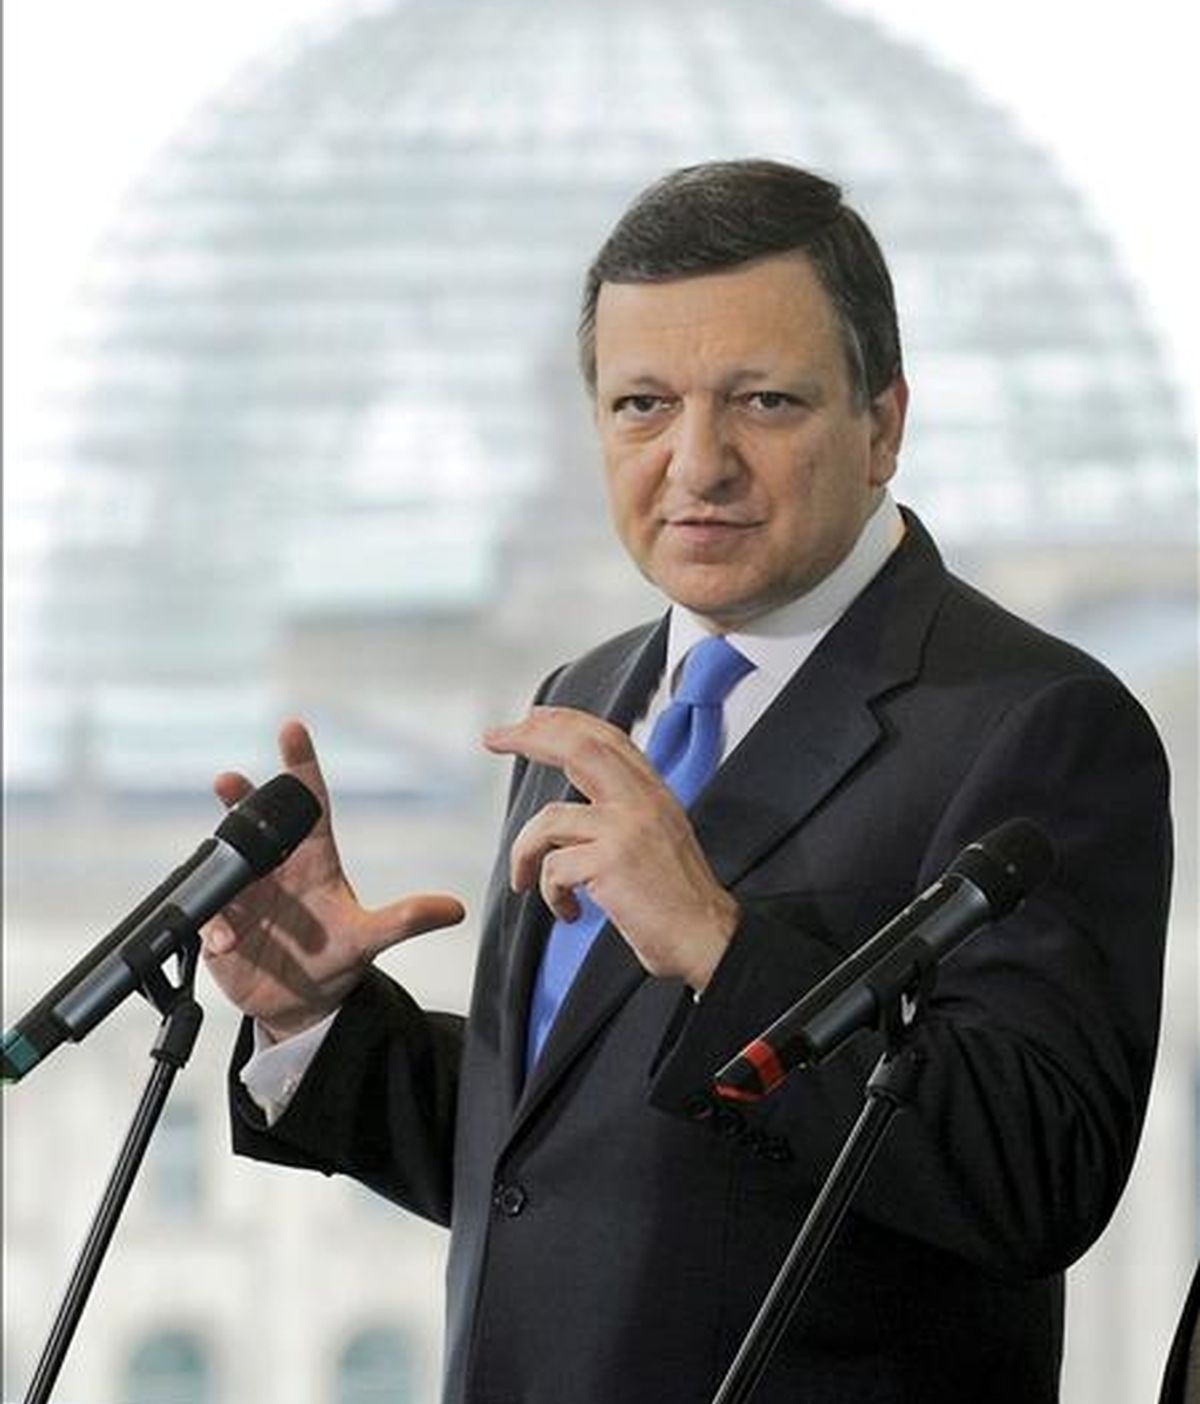 La crisis económica, la reforma de las estructuras de supervisión financiera y el apoyo a la reelección de José Manuel Durão Barroso como presidente de la Comisión Europea (CE) son los principales puntos de la agenda de la cumbre de jefes de Estado y de Gobierno de la UE que empezará mañana en Bruselas. EFE/Archivo